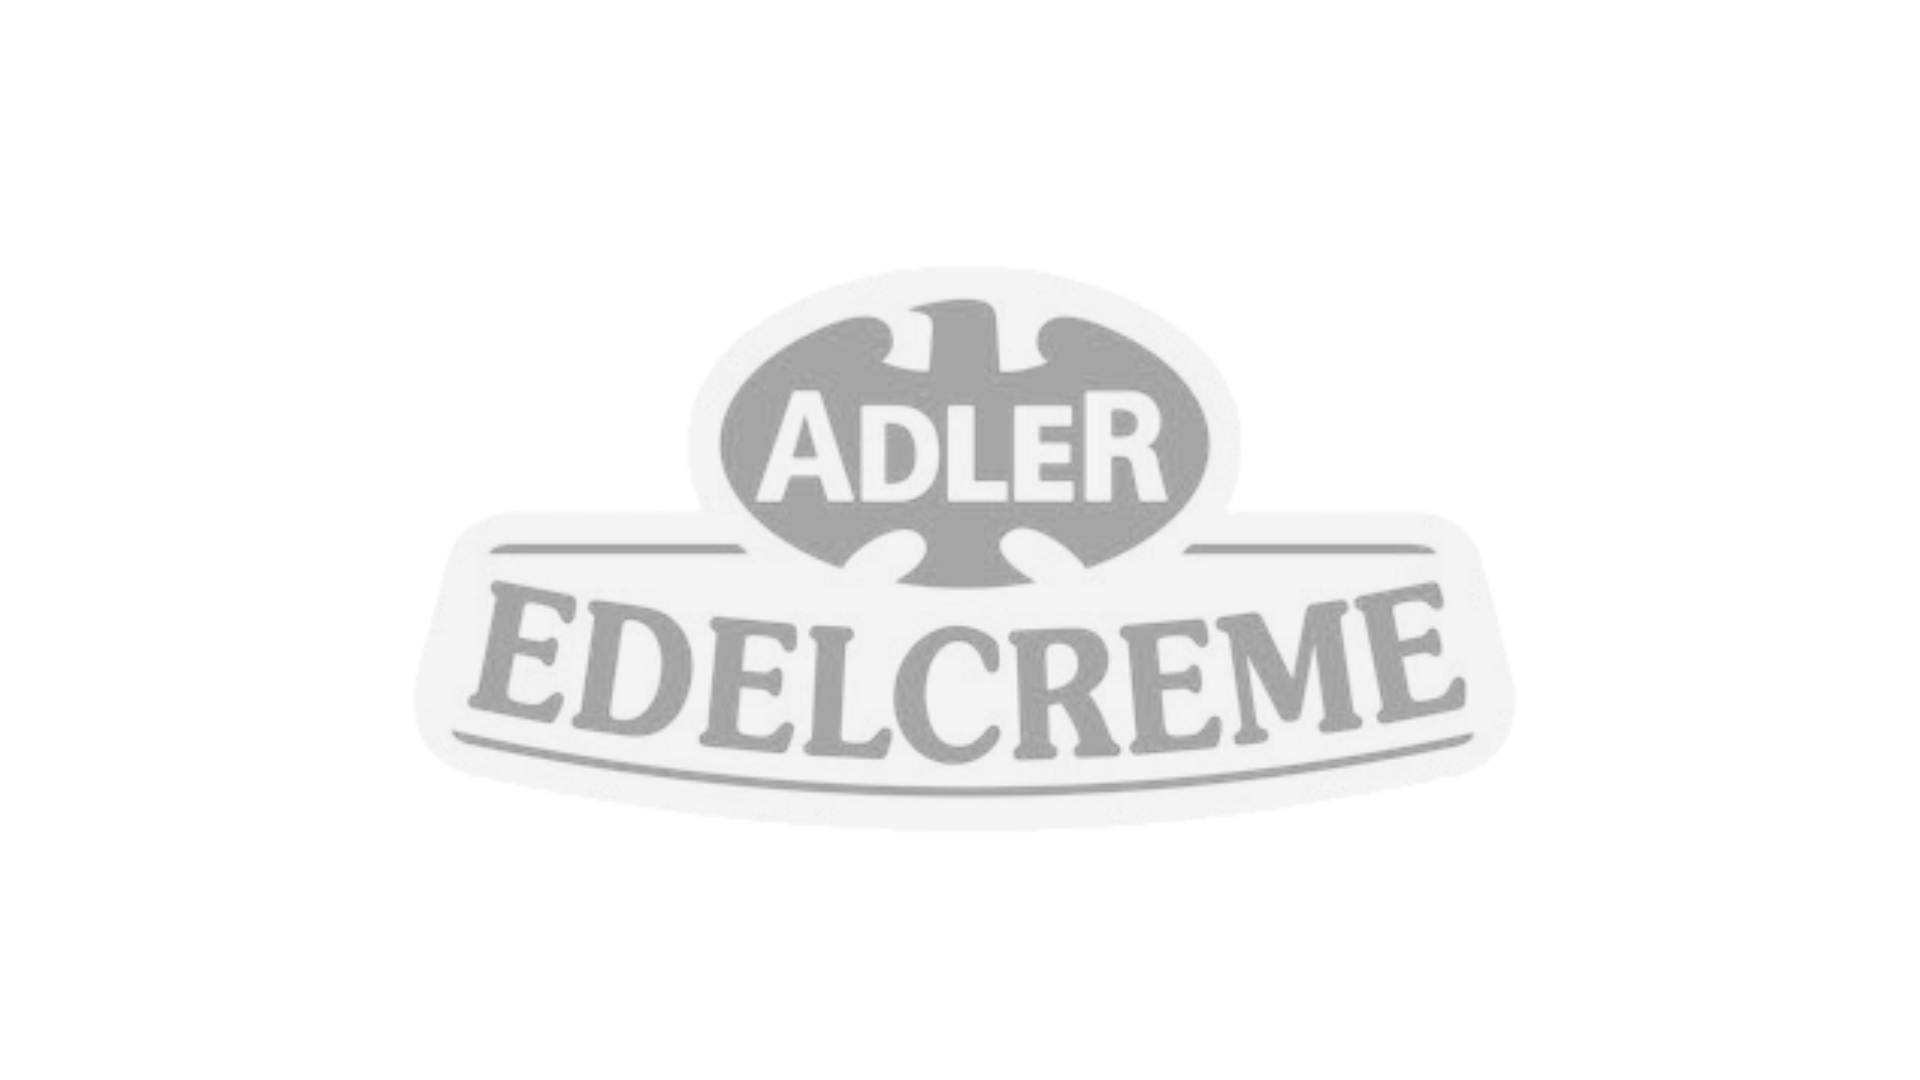 logo_edelcreme